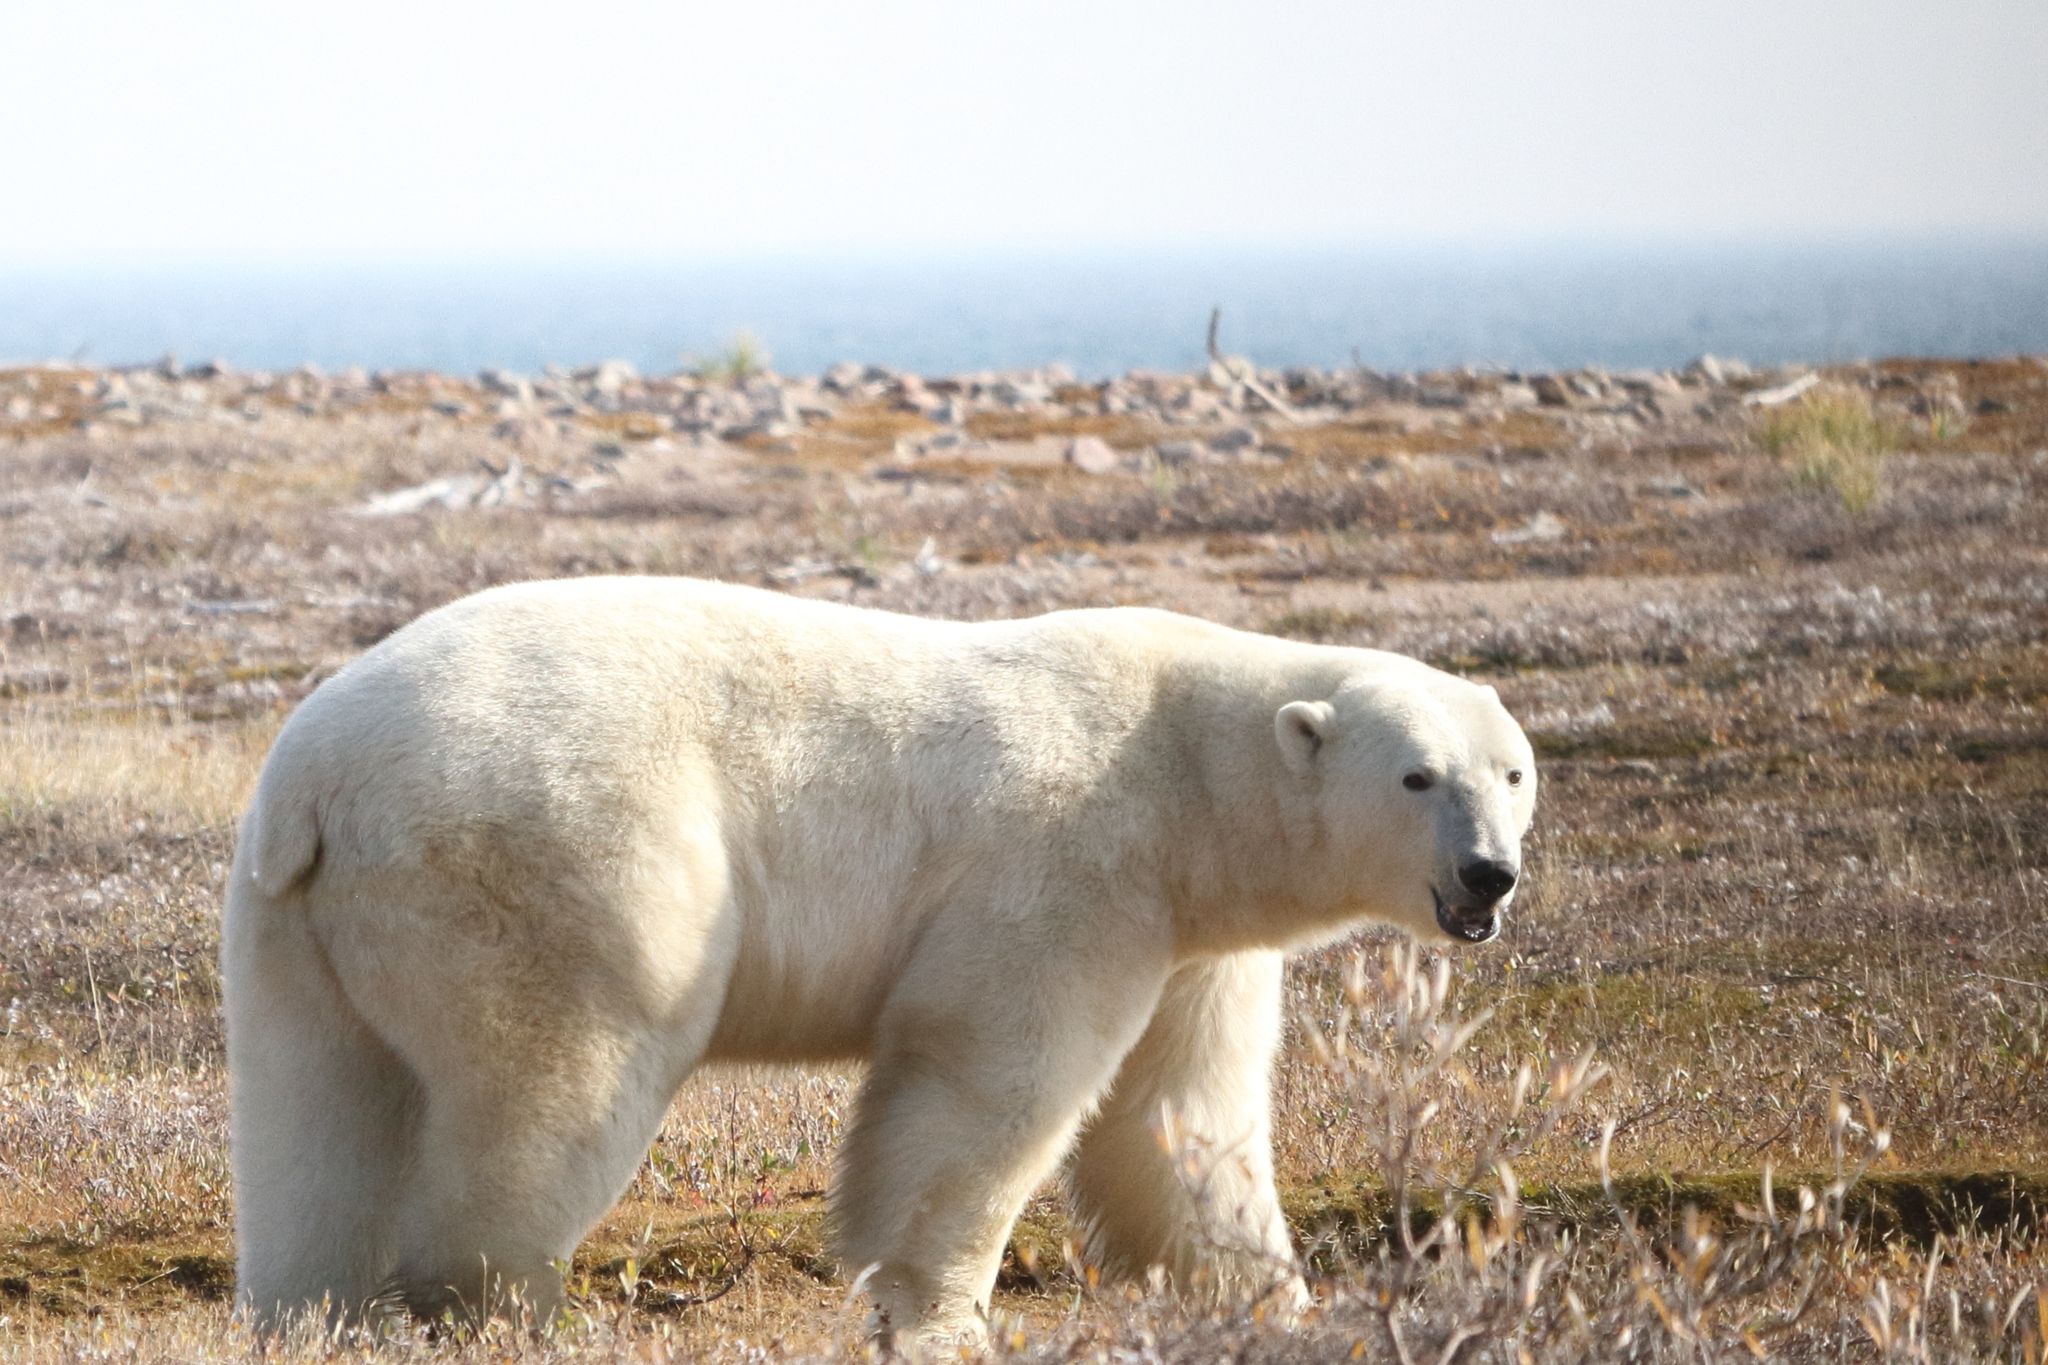 Ein Eisbär (Ursus maritimus) in der westlichen Hudson Bay Region im nordöstlichen Teil Kanadas.